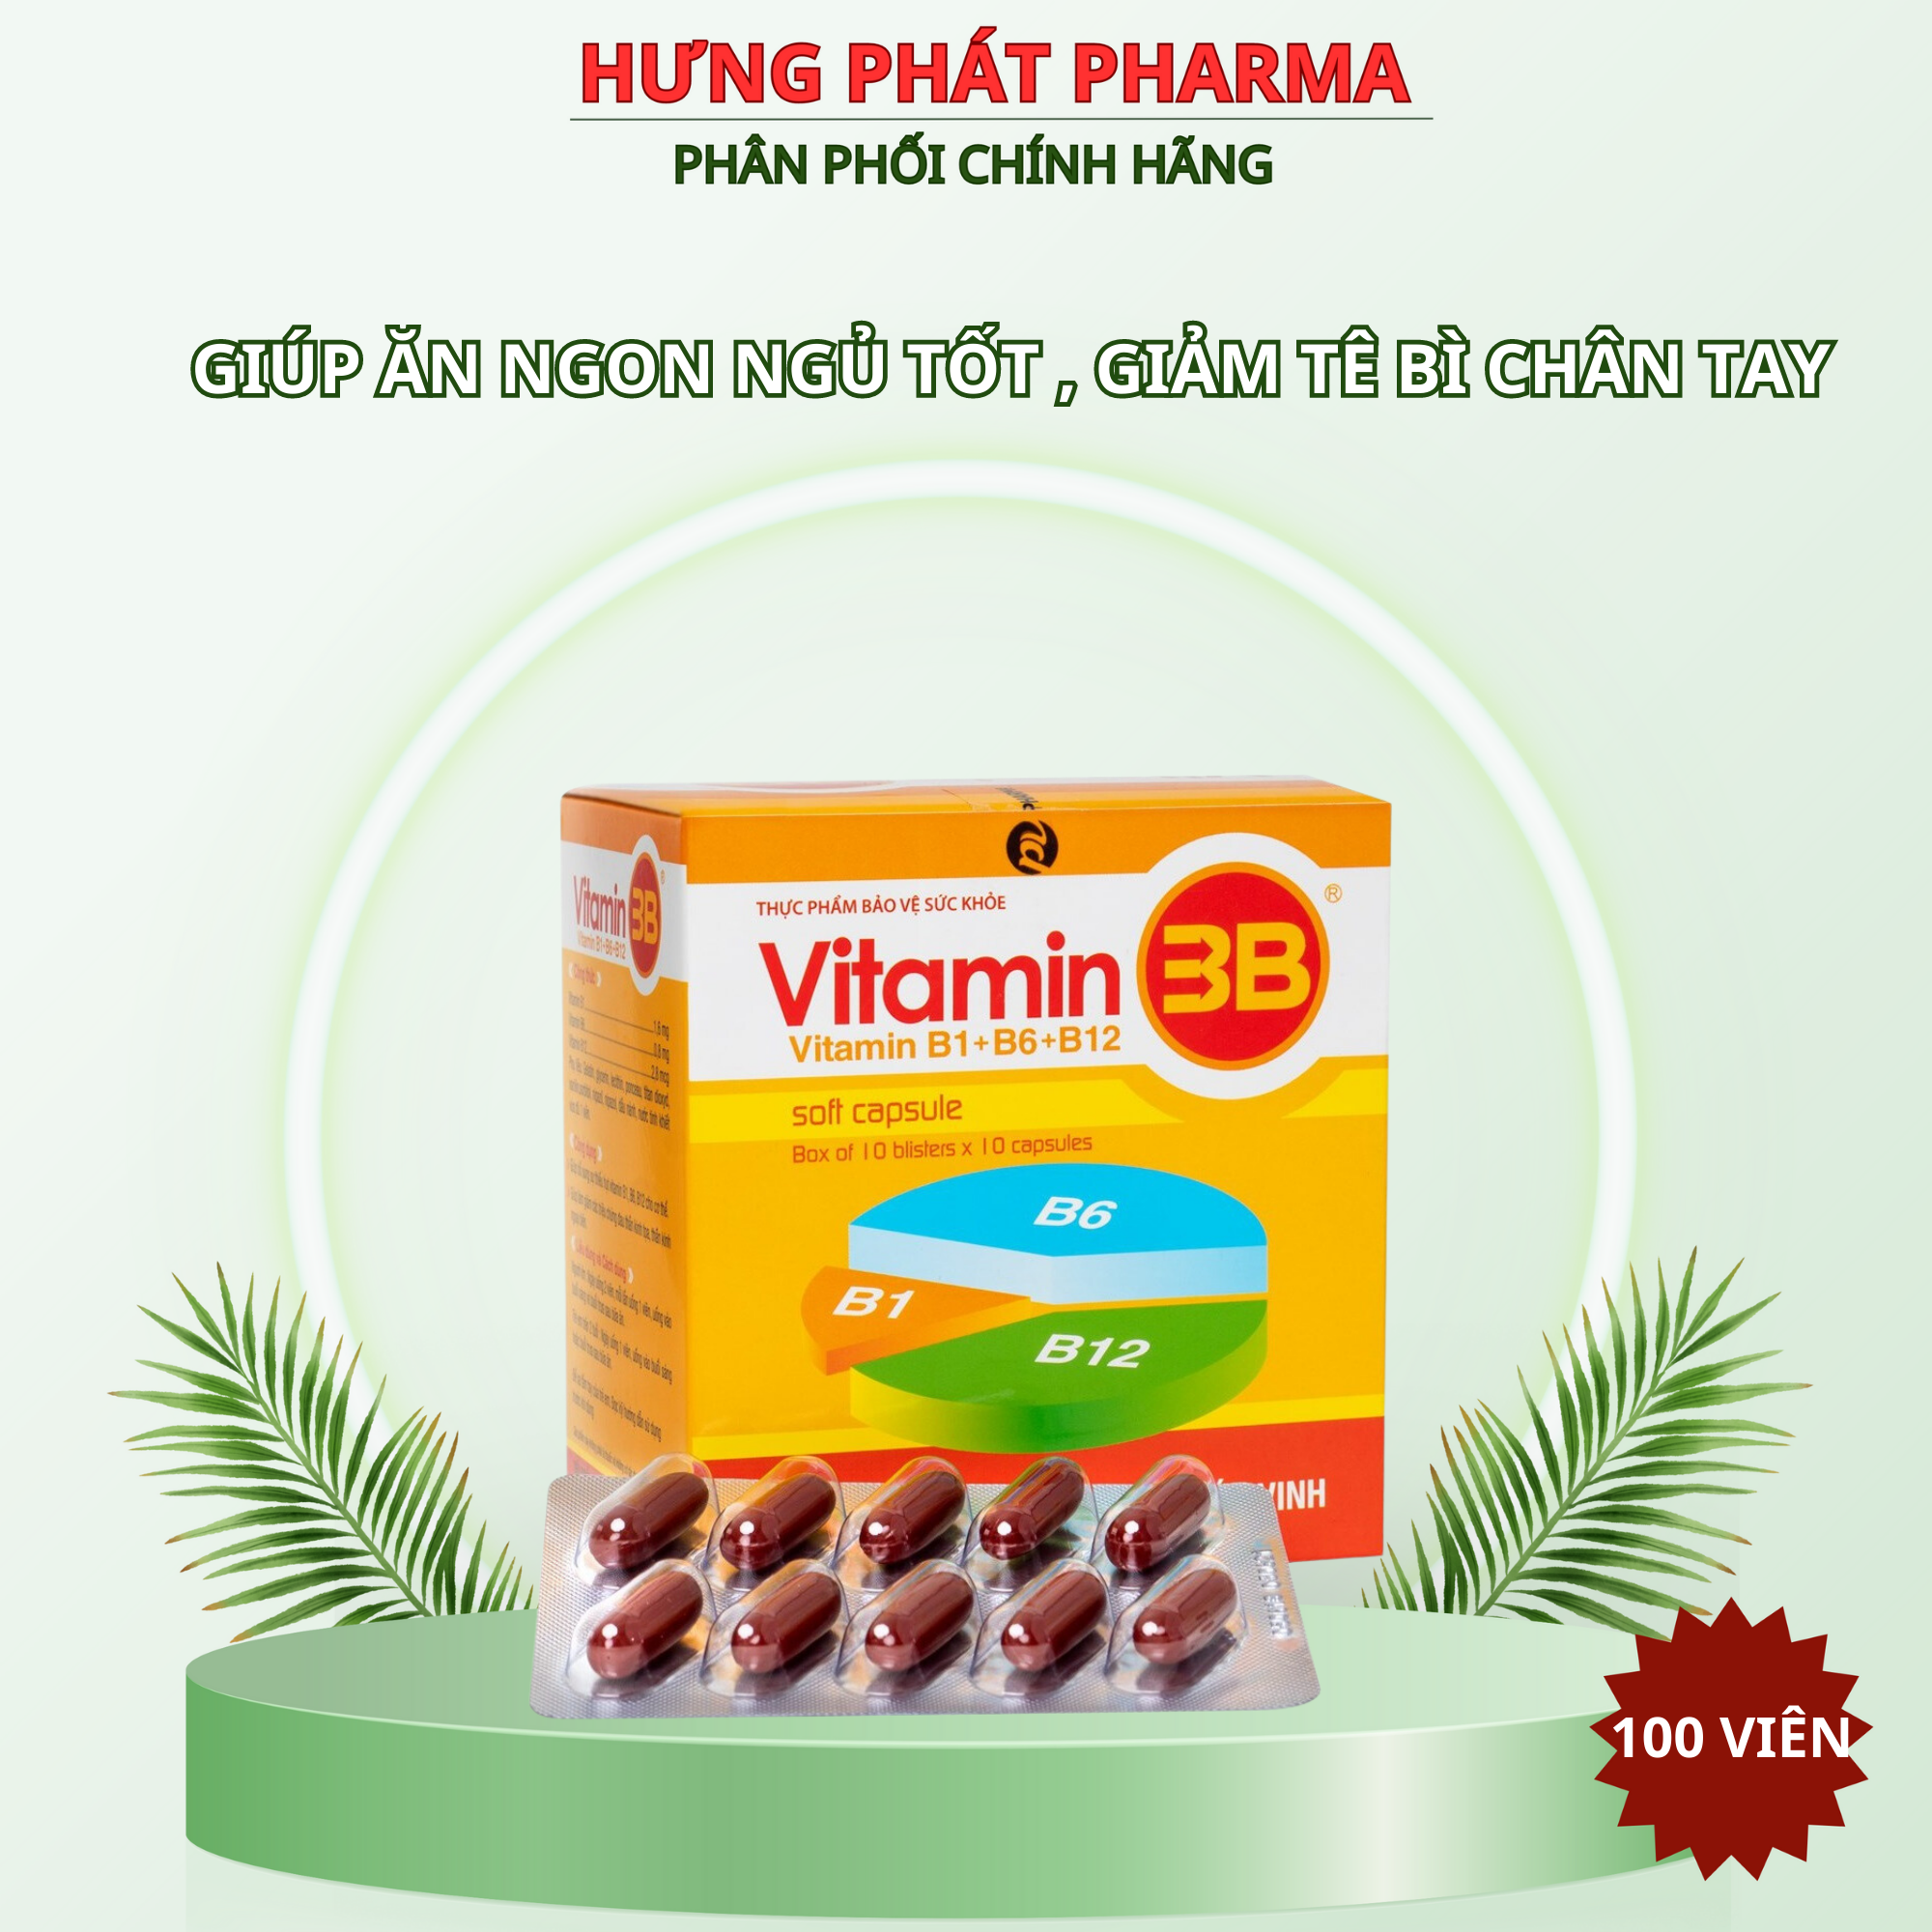 Viên uống Vitamin 3B giúp ăn ngon ngủ tốt, giảm đau nhức, tê bì chân tay hộp - 100 viên 